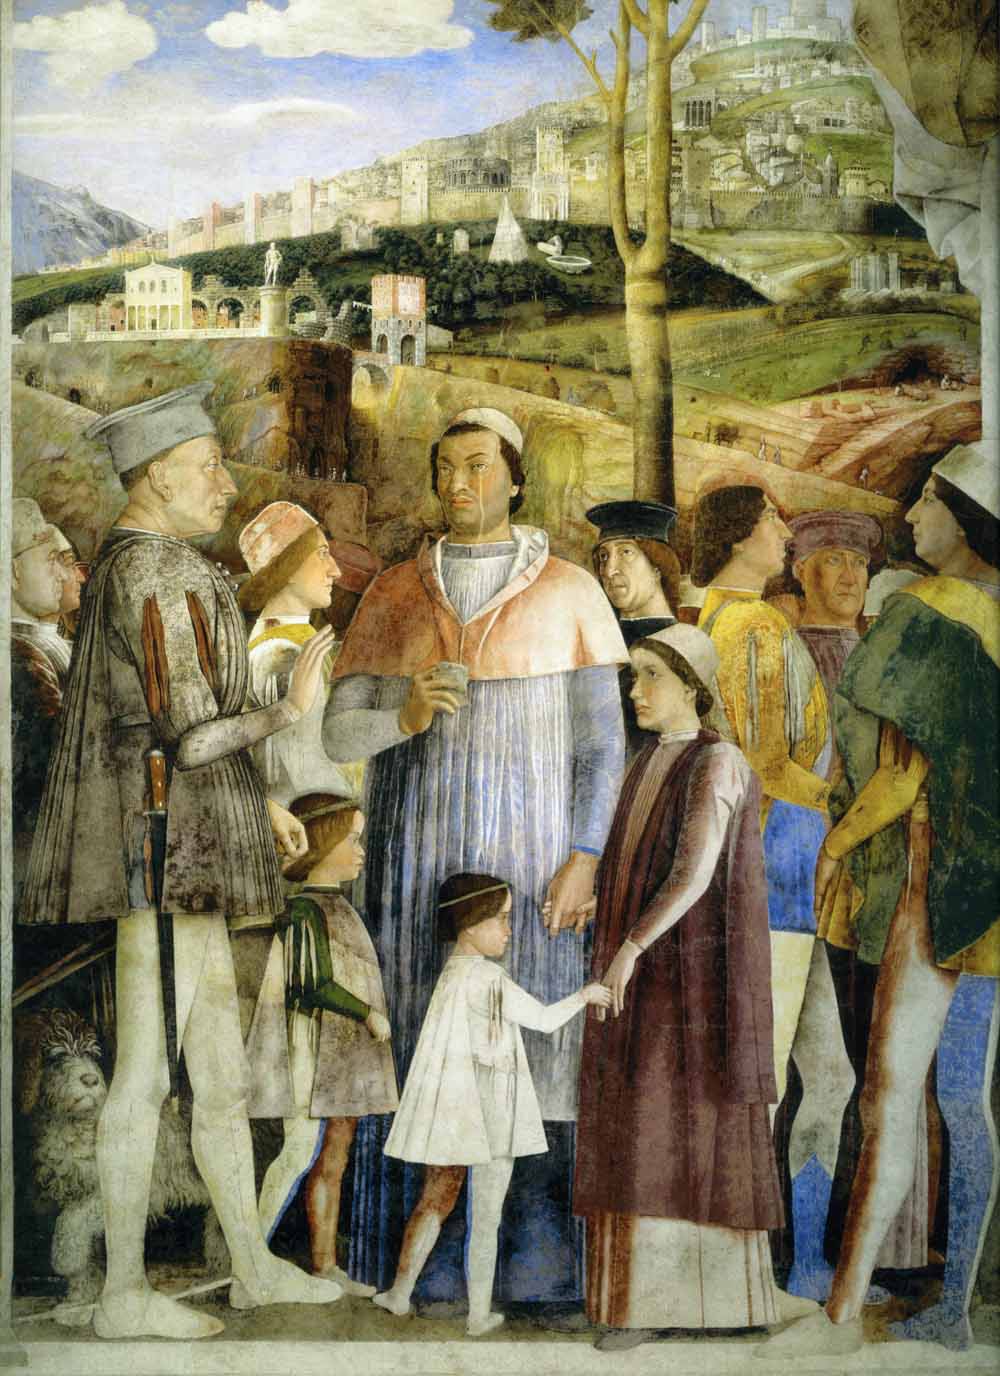 Andrea Mantegna (1431-1506), Il Marchese Ludovico II Gonzaga incontra il figlio, Cardinale Francesco, alle porte di Roma, affresco, 1465-1474, particolare. Sulla sinistra, ai piedi del Marchese, si intravede un Lagotto (Mantova, Castello di San Giorgio, Camera degli Sposi, parete Ovest).